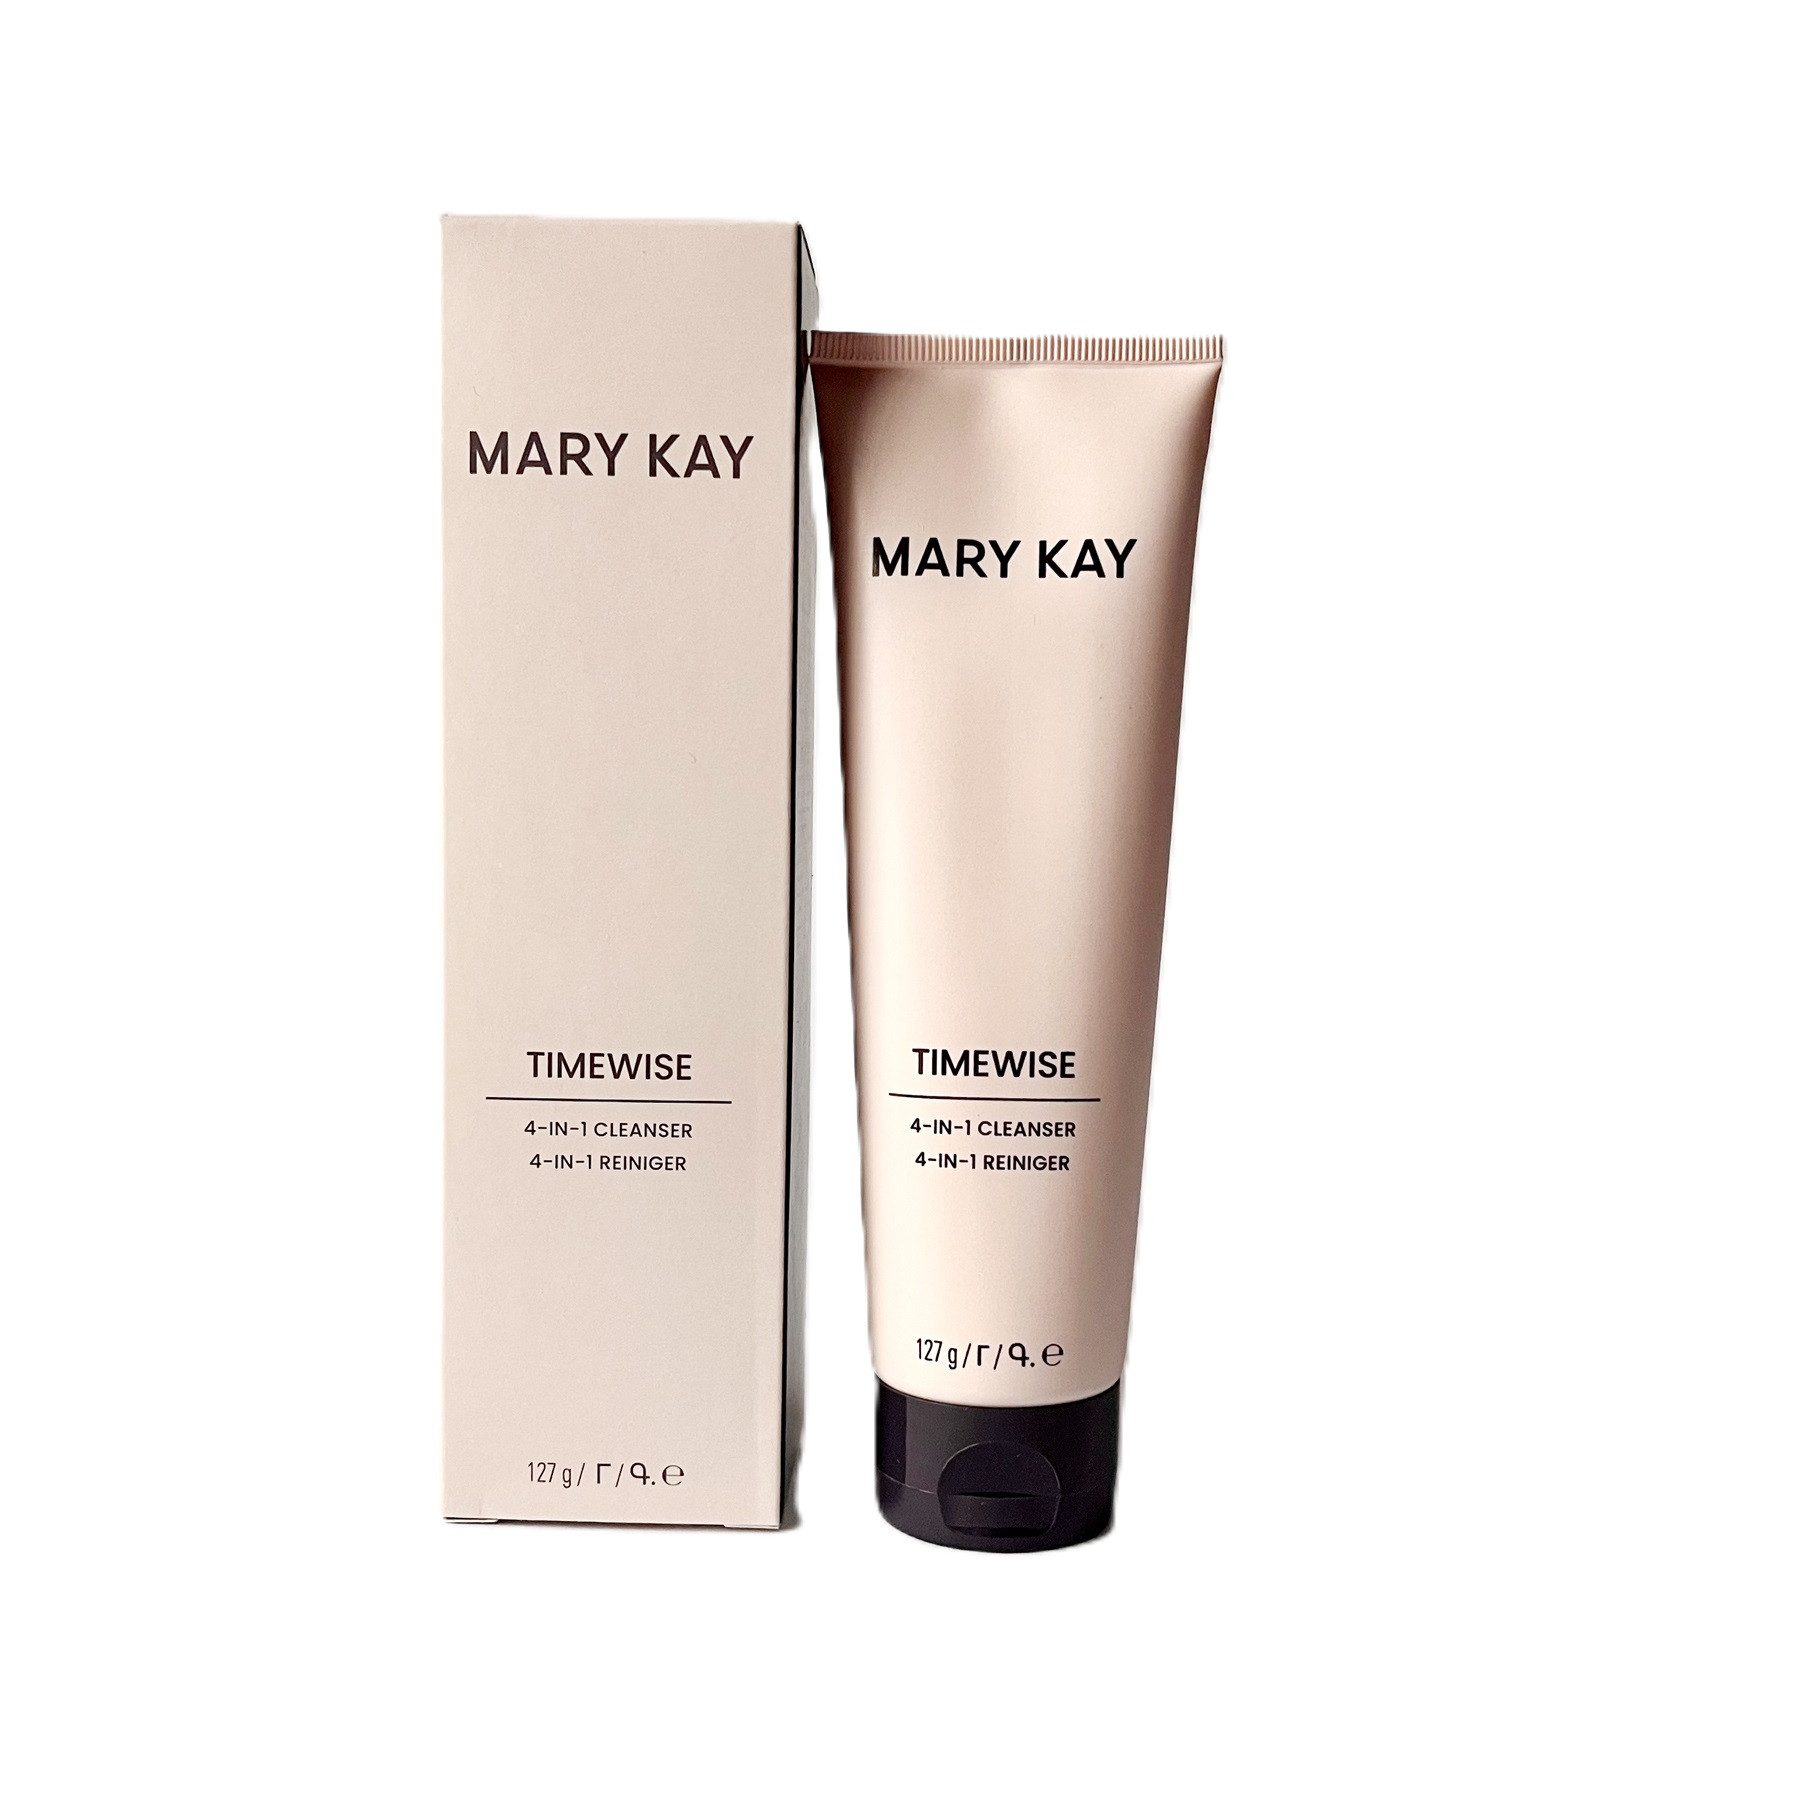 Mary Kay Gesichts-Reinigungslotion TimeWise 4 in 1 Cleanser Reiniger normale/trockene Haut 127 g Neu